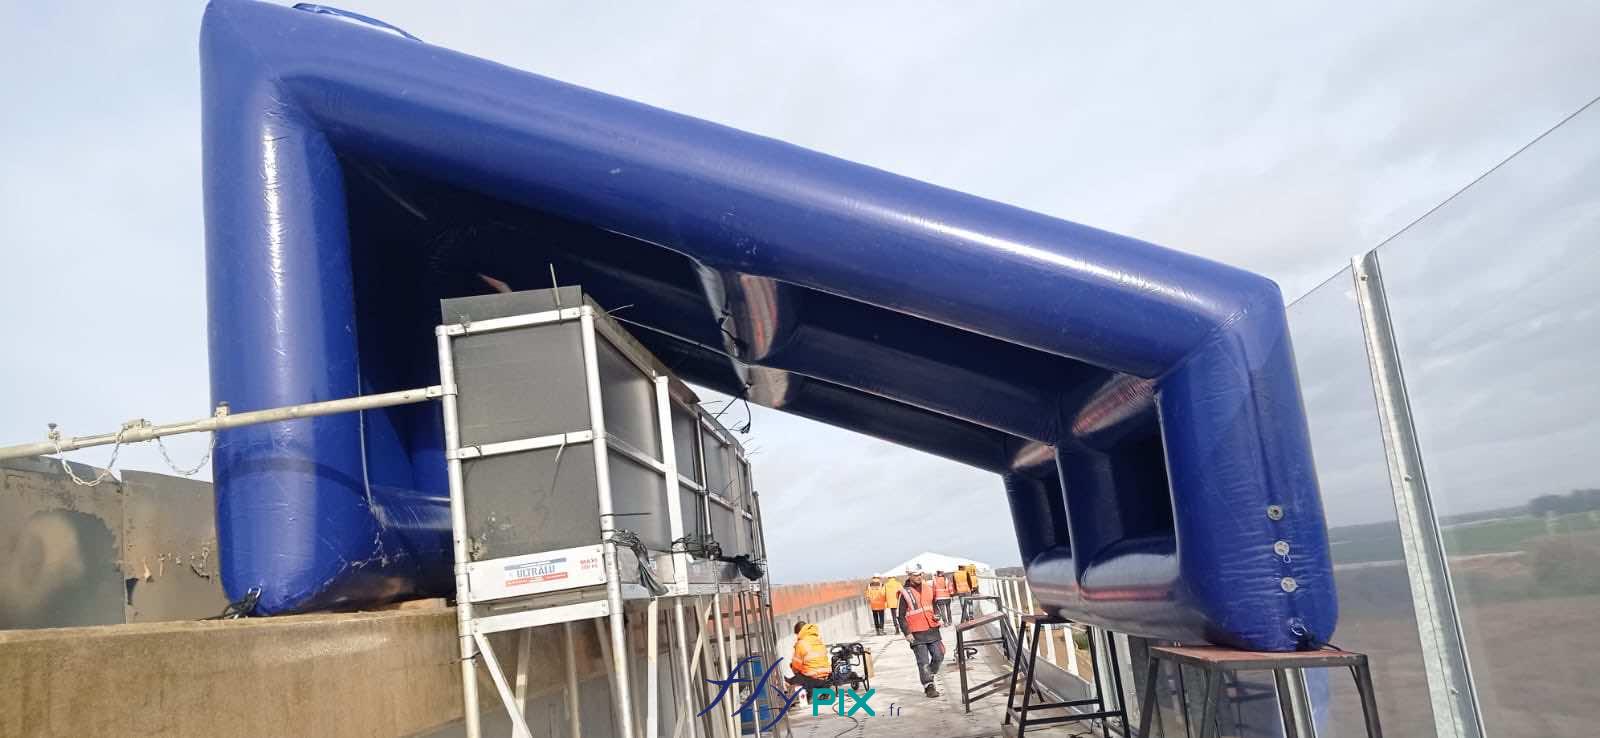 FlyPix abri tente gonflable air captif ventile pompe turbine enveloppe pvc 045 060mm chantier viaduc EUROVIA 8